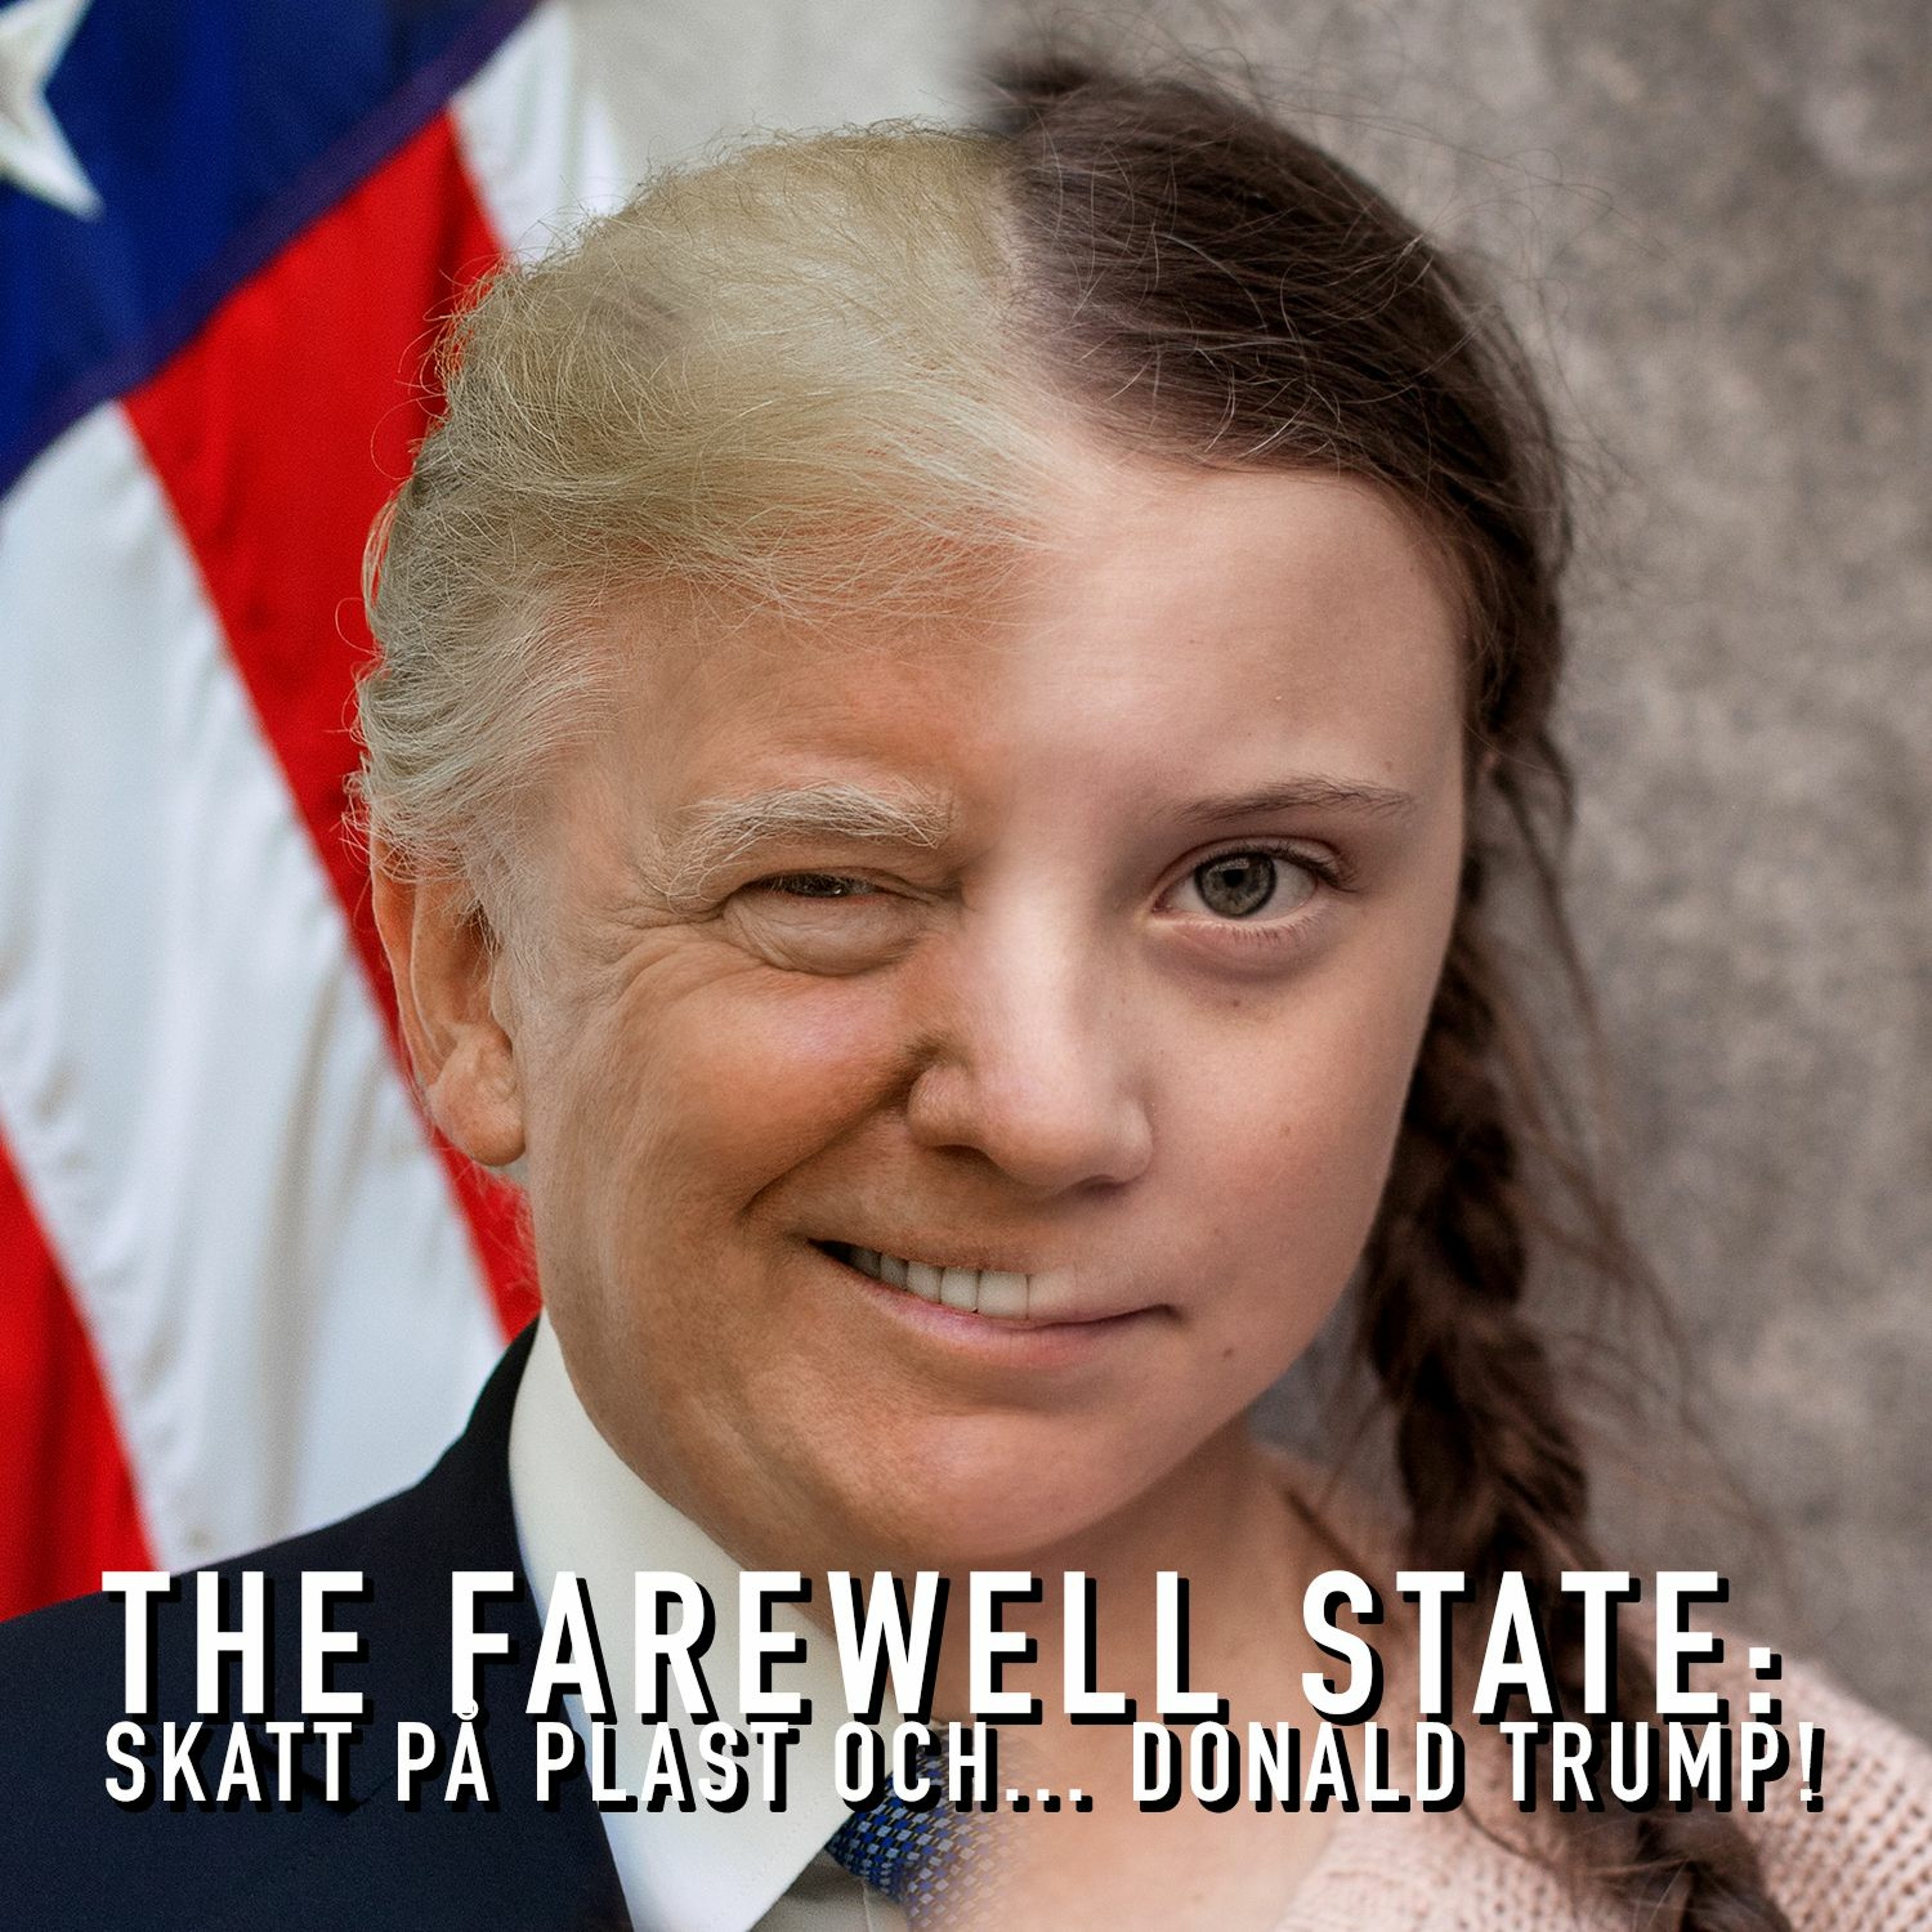 Skatt på plastpåsar och... Donald Trump! - The Farewell State | Lyssna här  | Poddtoppen.se